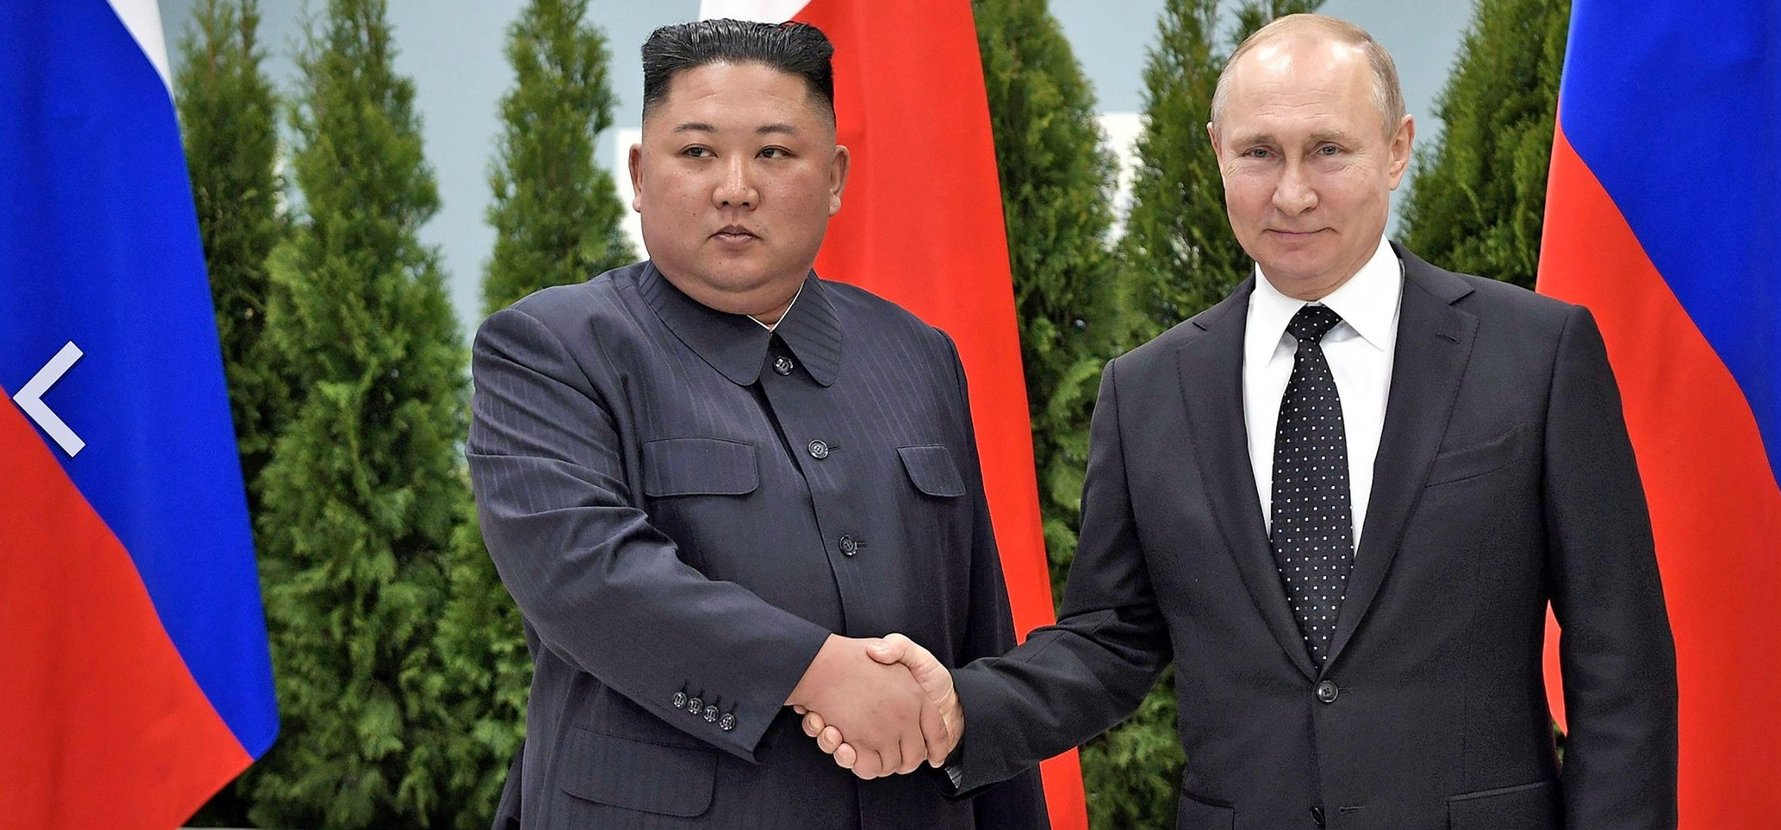 Putyin katonai segítséget kért Észak-Koreától, a diktátor Kim Dzsongun pedig nem késlekedett a válasszal